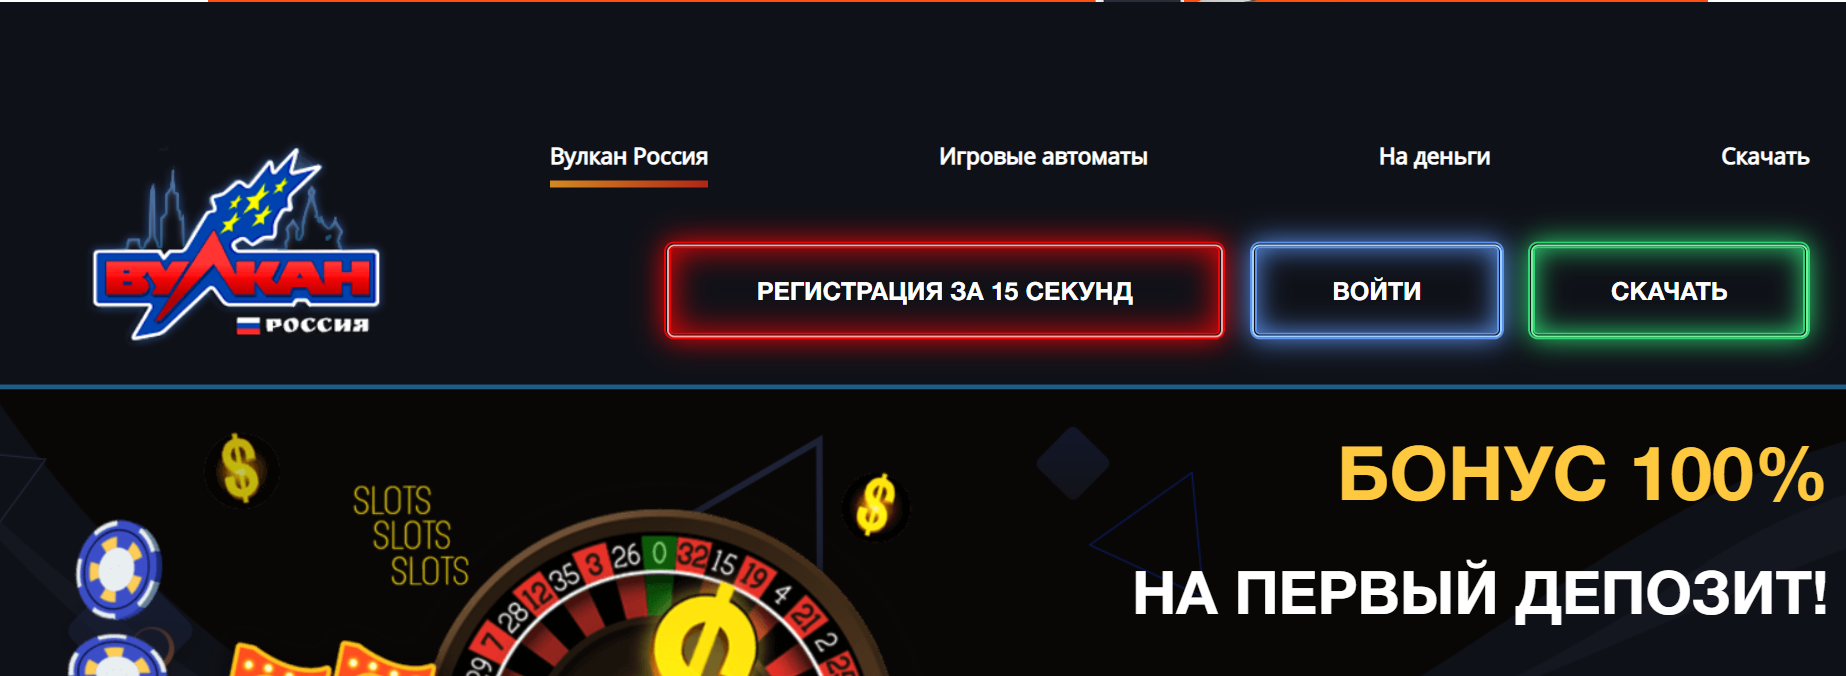 Вулкан россии казино 16 марта 2017 года покердом как снять деньги